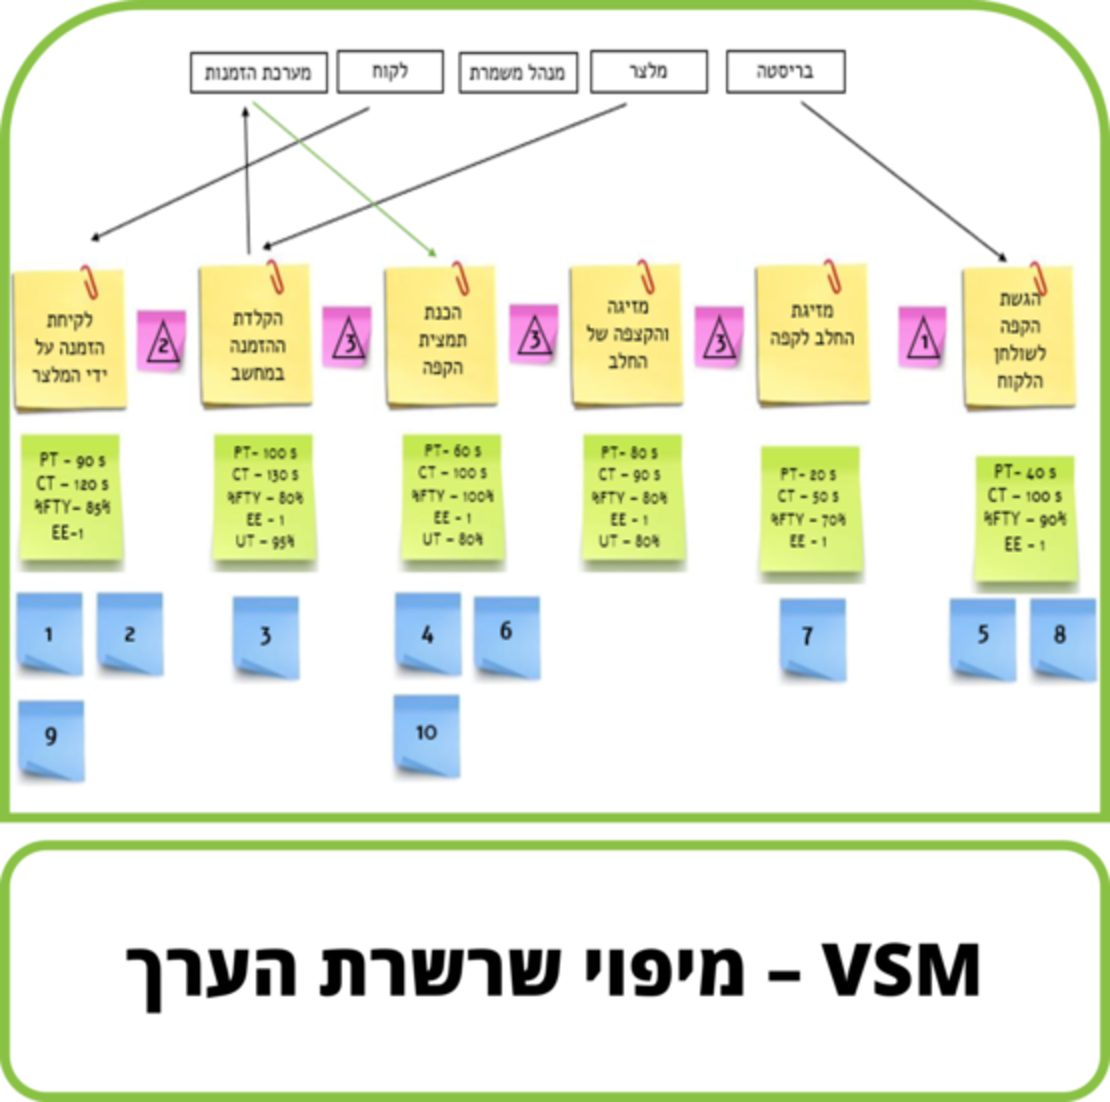 קורס דיגיטלי - VSM - מיפוי שרשרת הערך